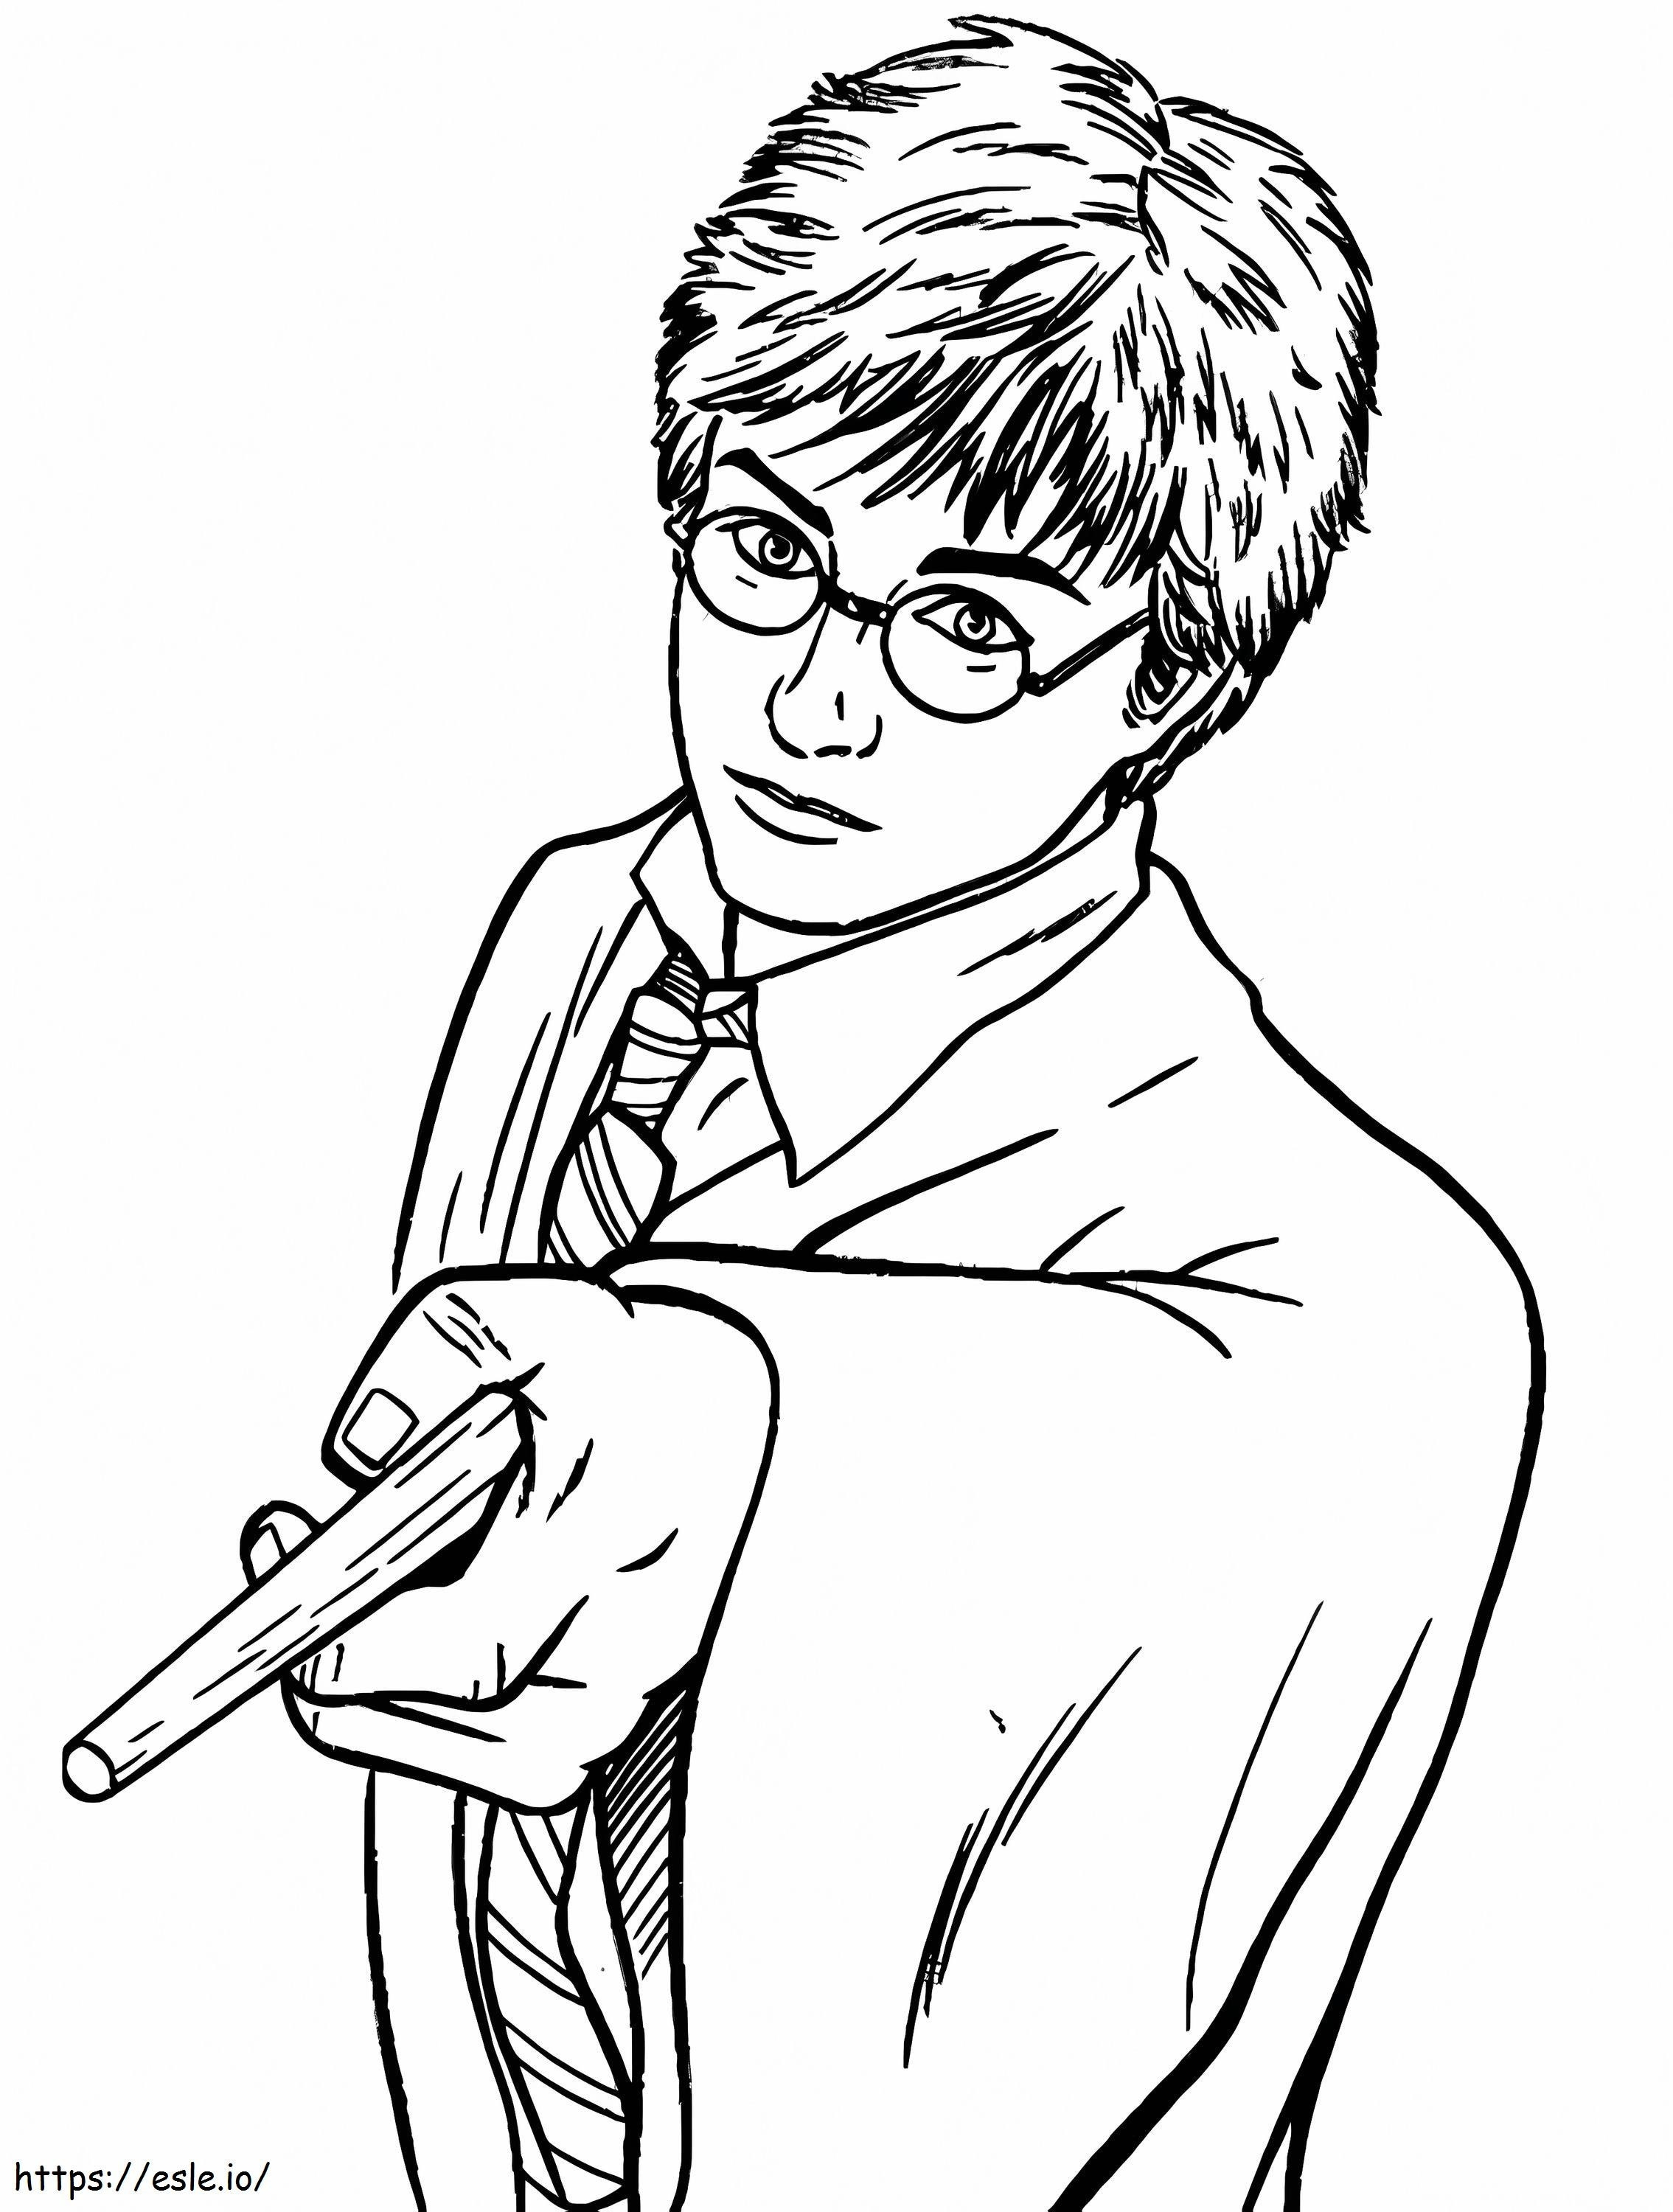 Fantastico Harry Potter con in mano una bacchetta magica da colorare